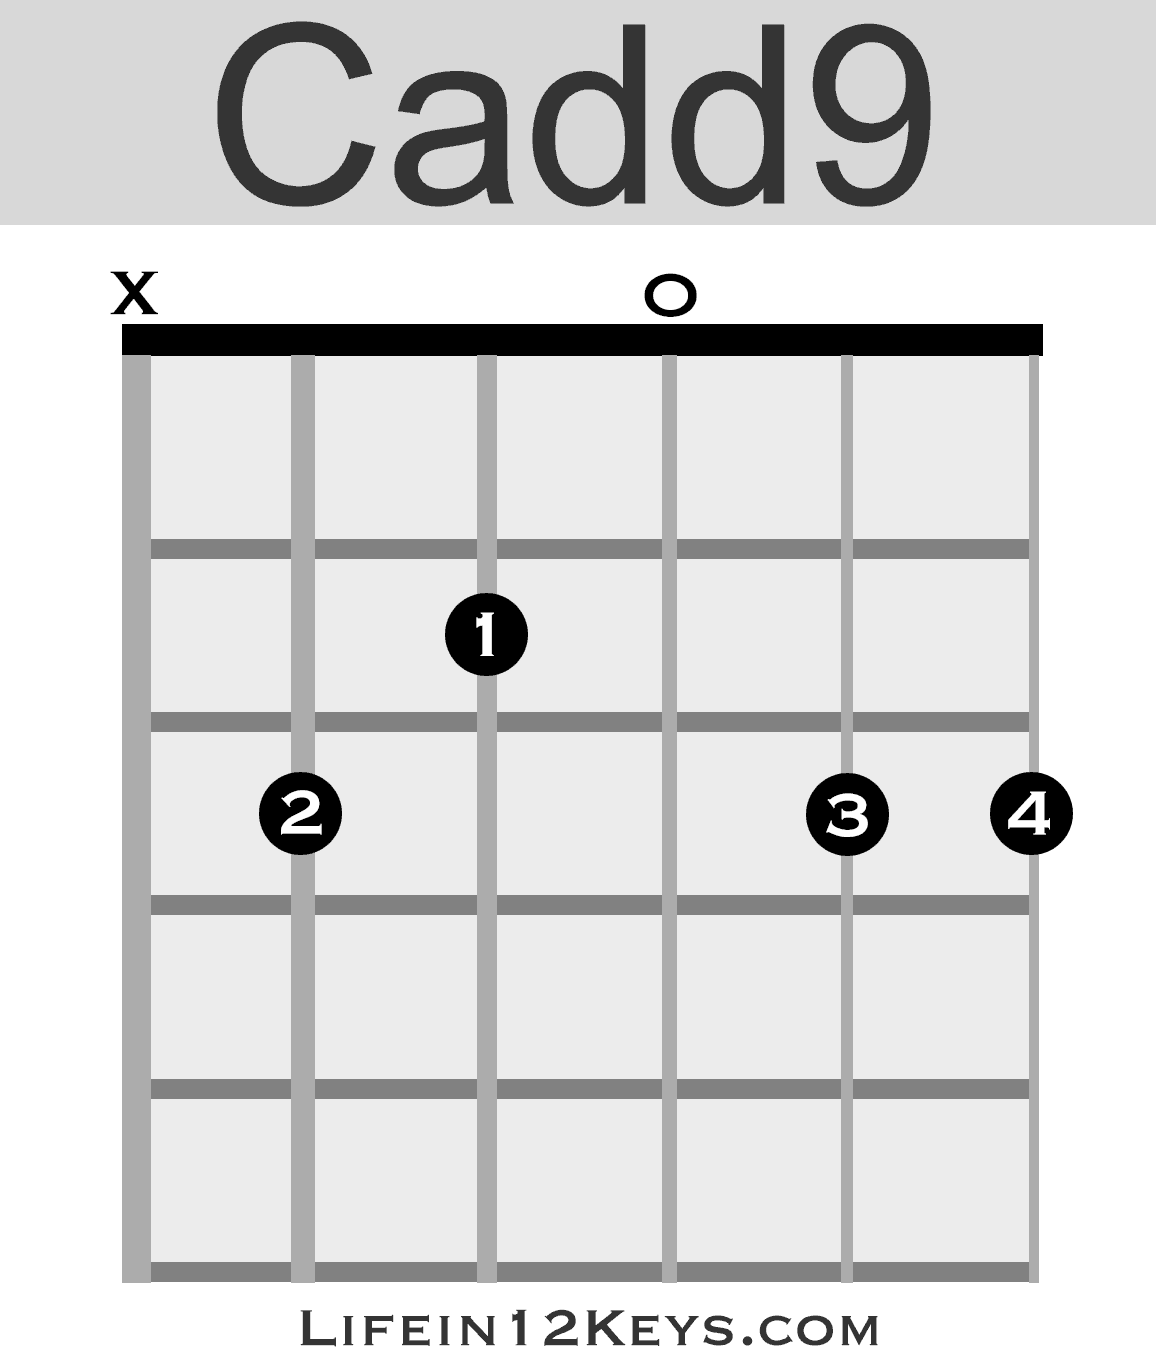 Cadd9 guitar chord | Life In 12 Keys